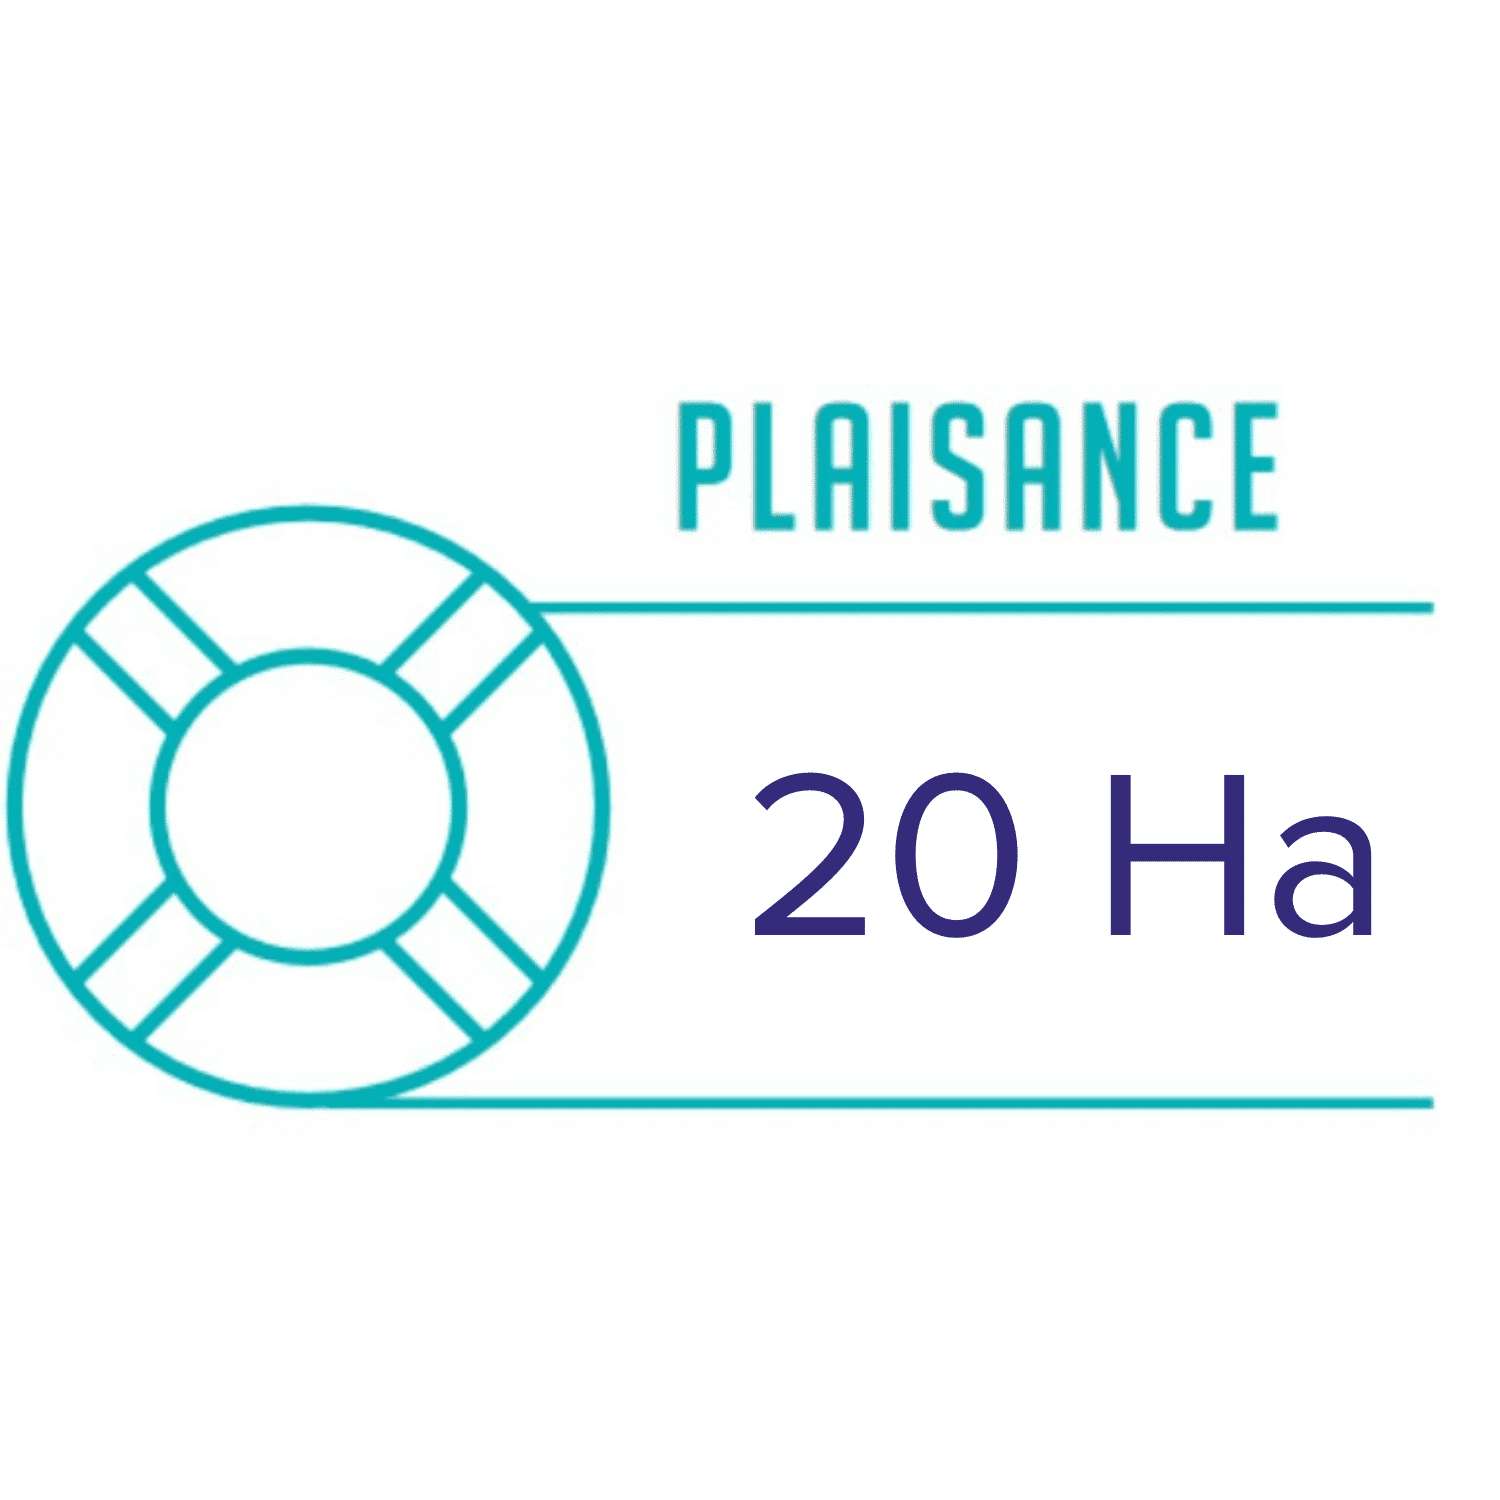 plaisance 20 Ha